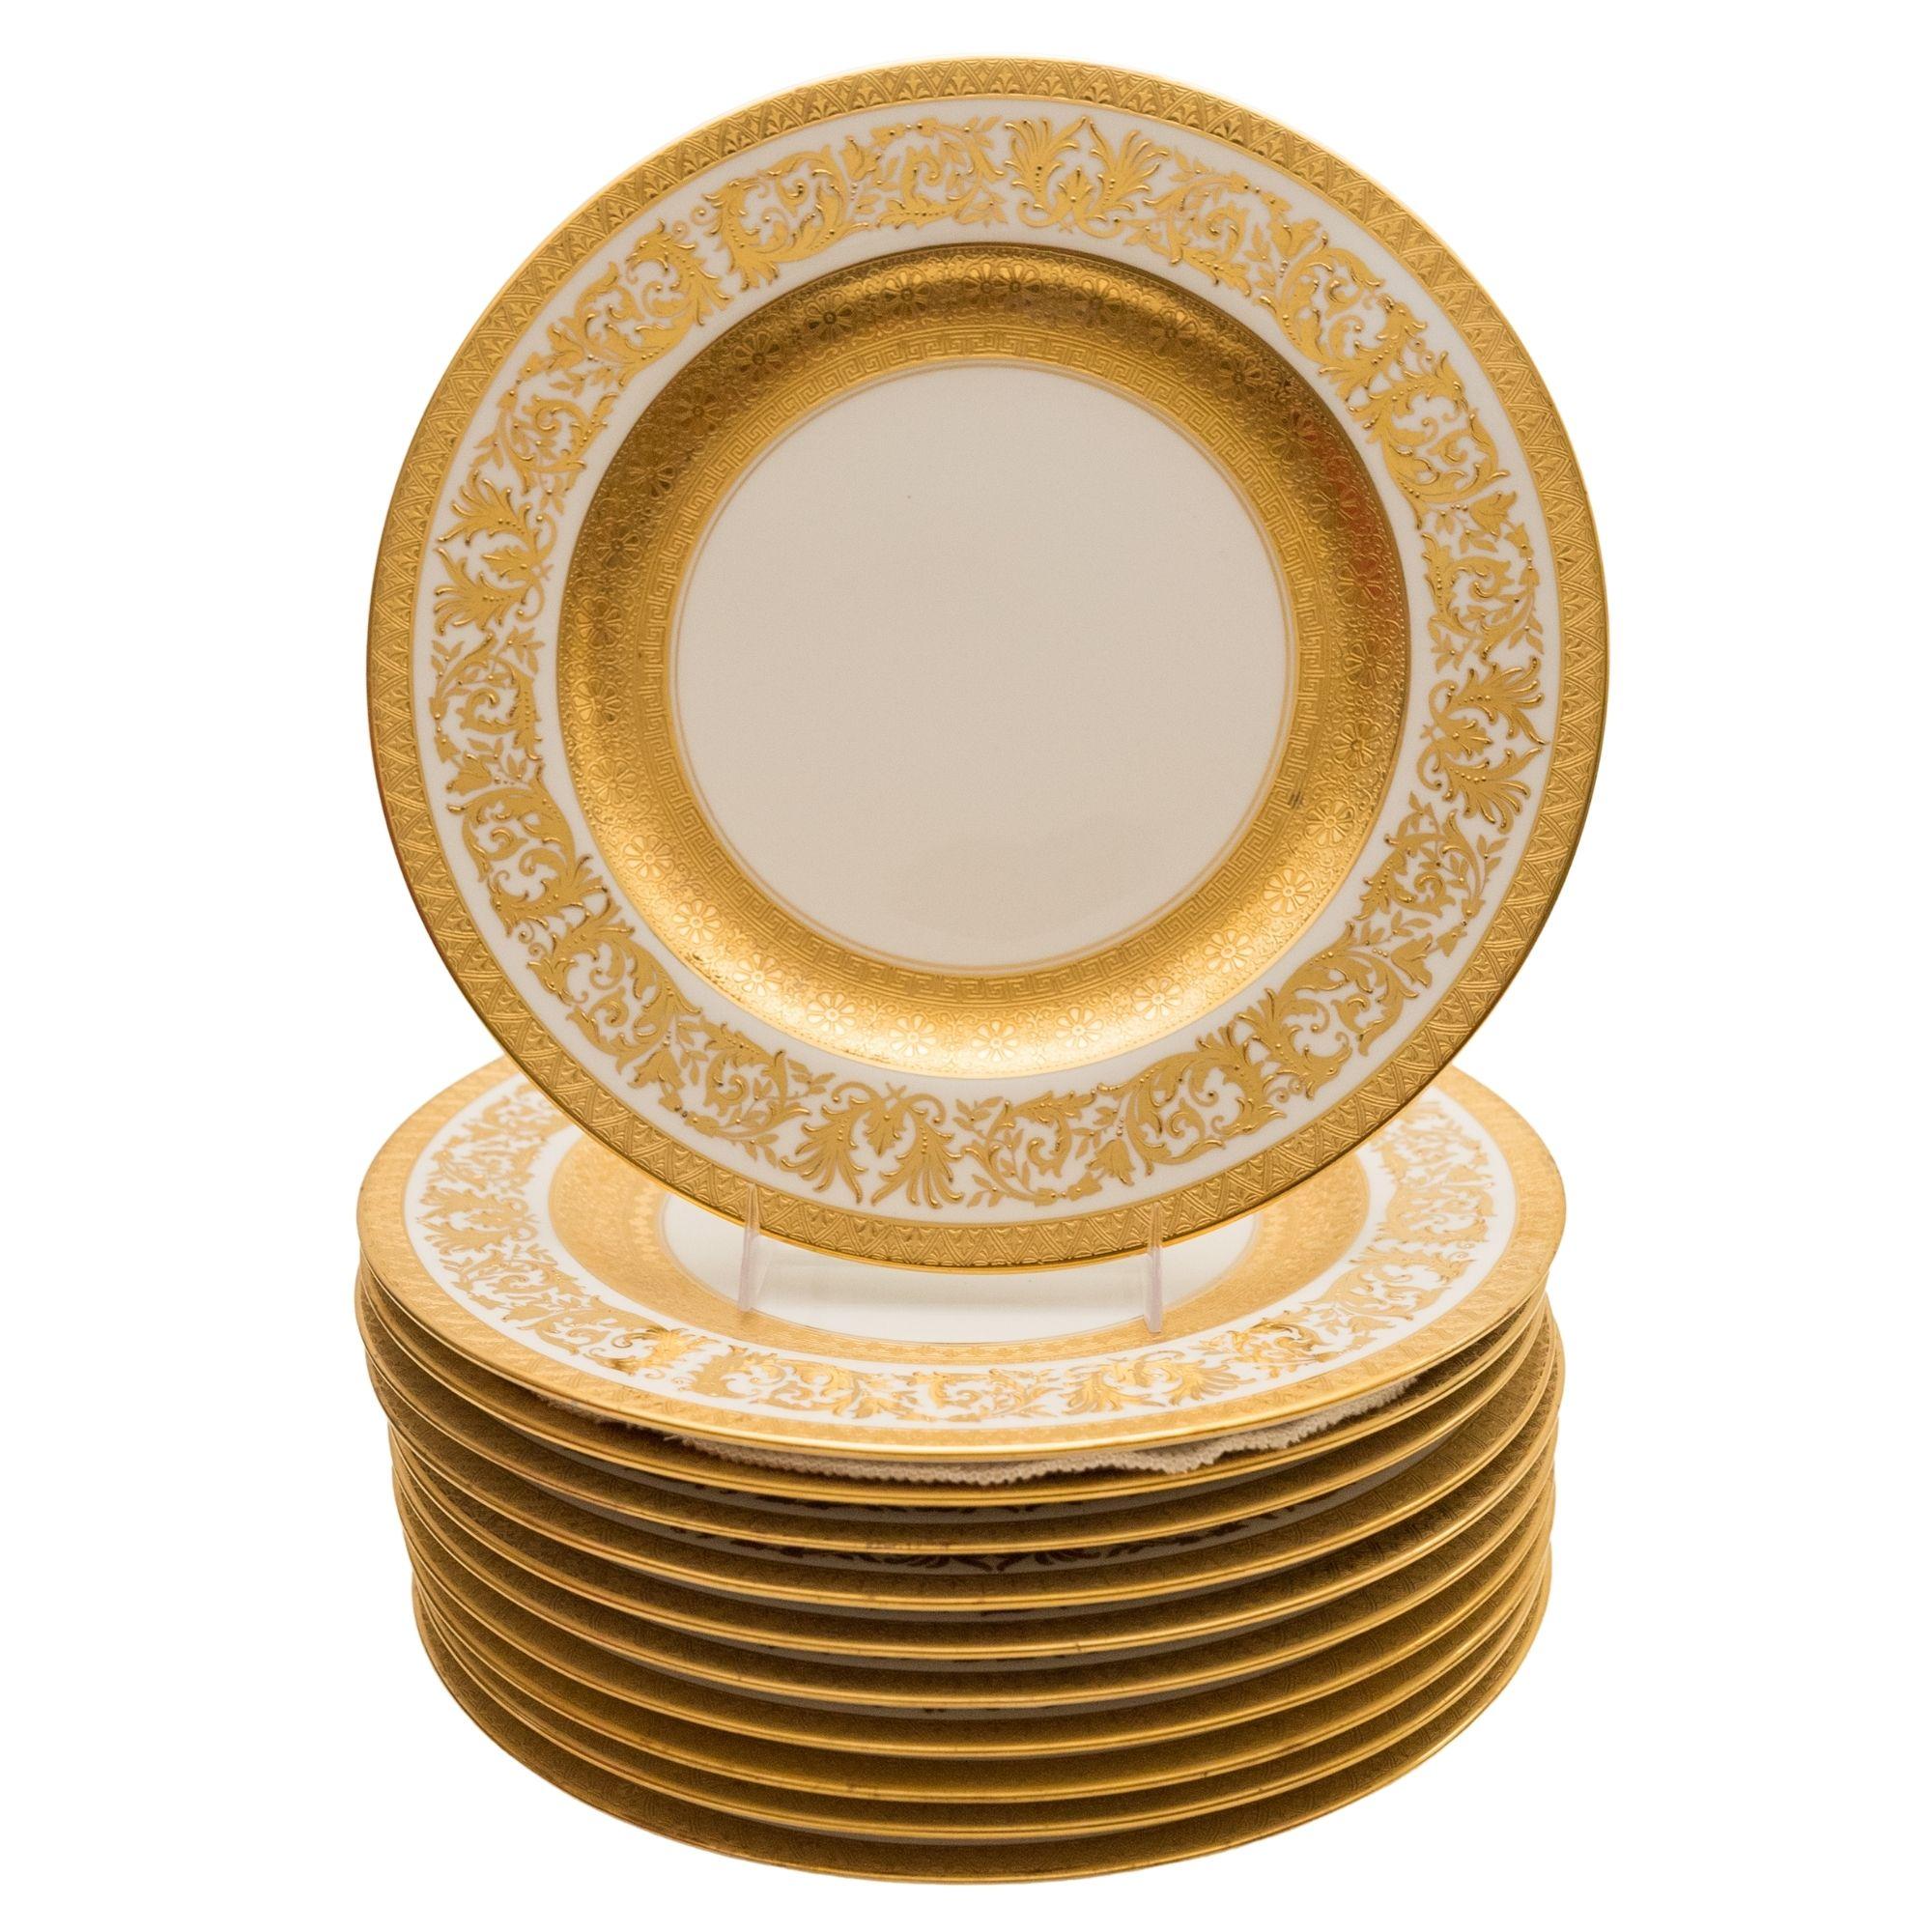 Cet ensemble de onze assiettes plates provient de l'un des meilleurs fabricants de porcelaine de l'âge d'or, Crown Staffordshire. Les cols sont ornés d'un magnifique travail de dorure en relief et d'une bande intérieure extra-large en or. Commandé